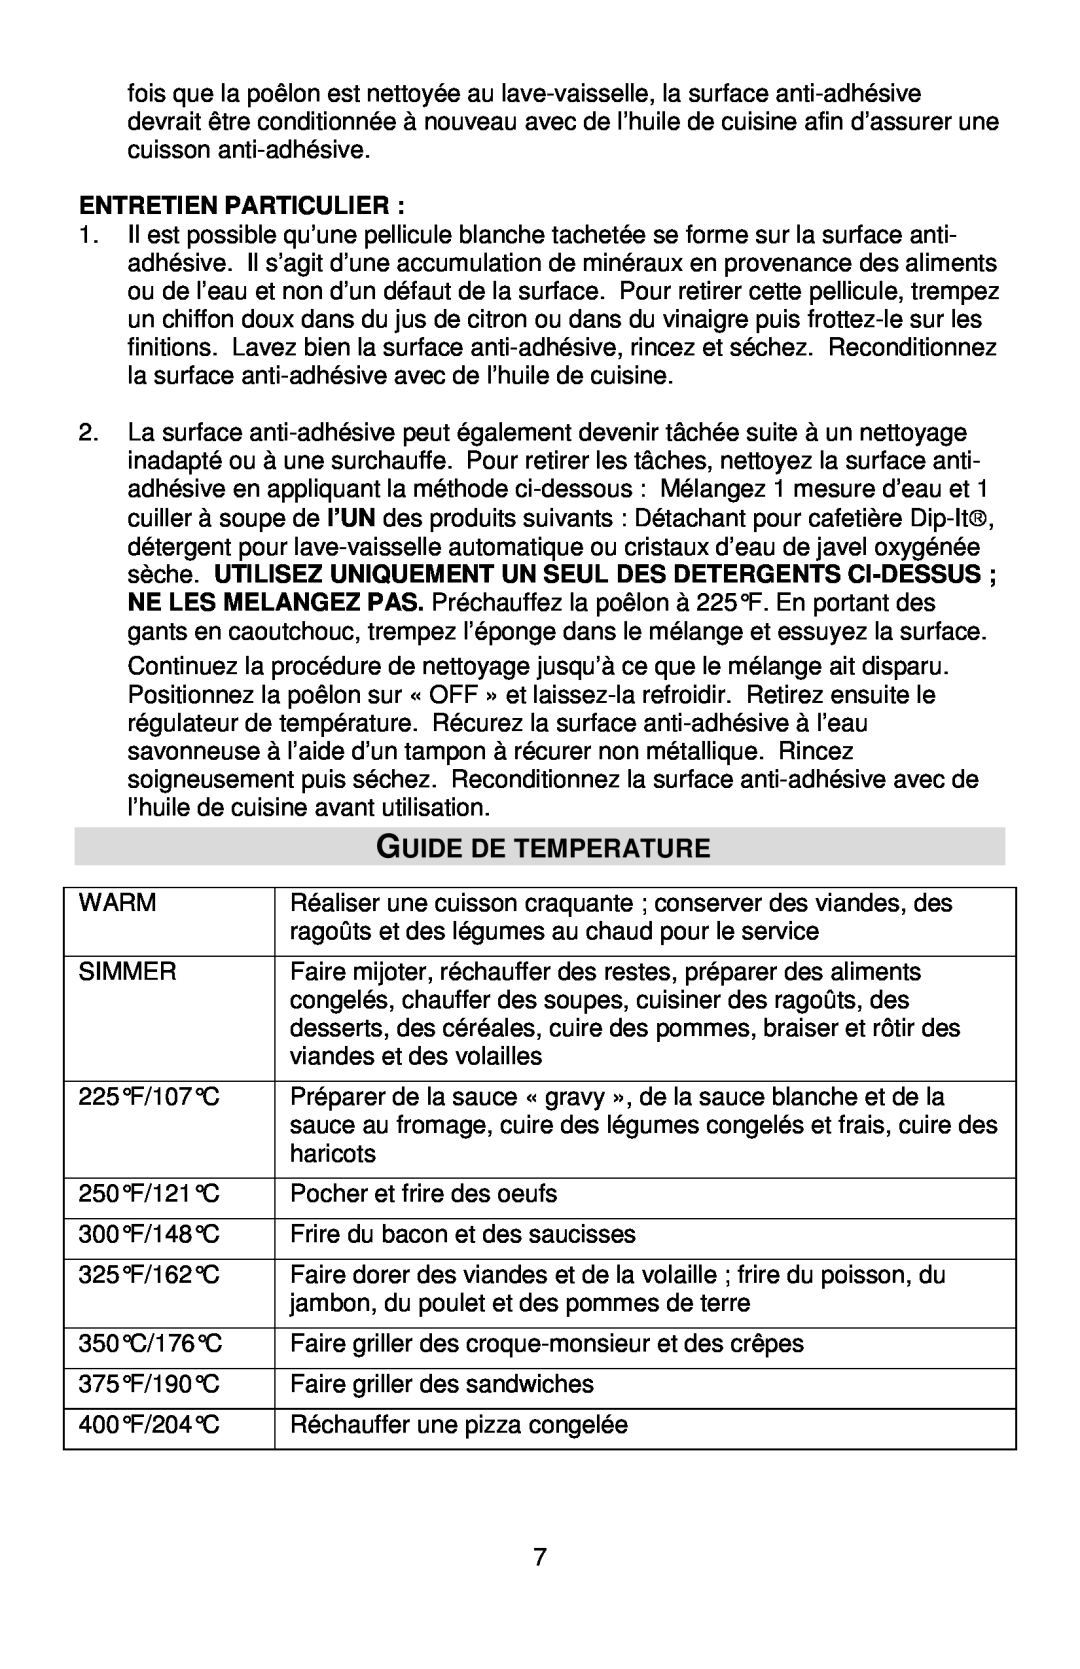 West Bend L5571D instruction manual Guide De Temperature, Entretien Particulier 